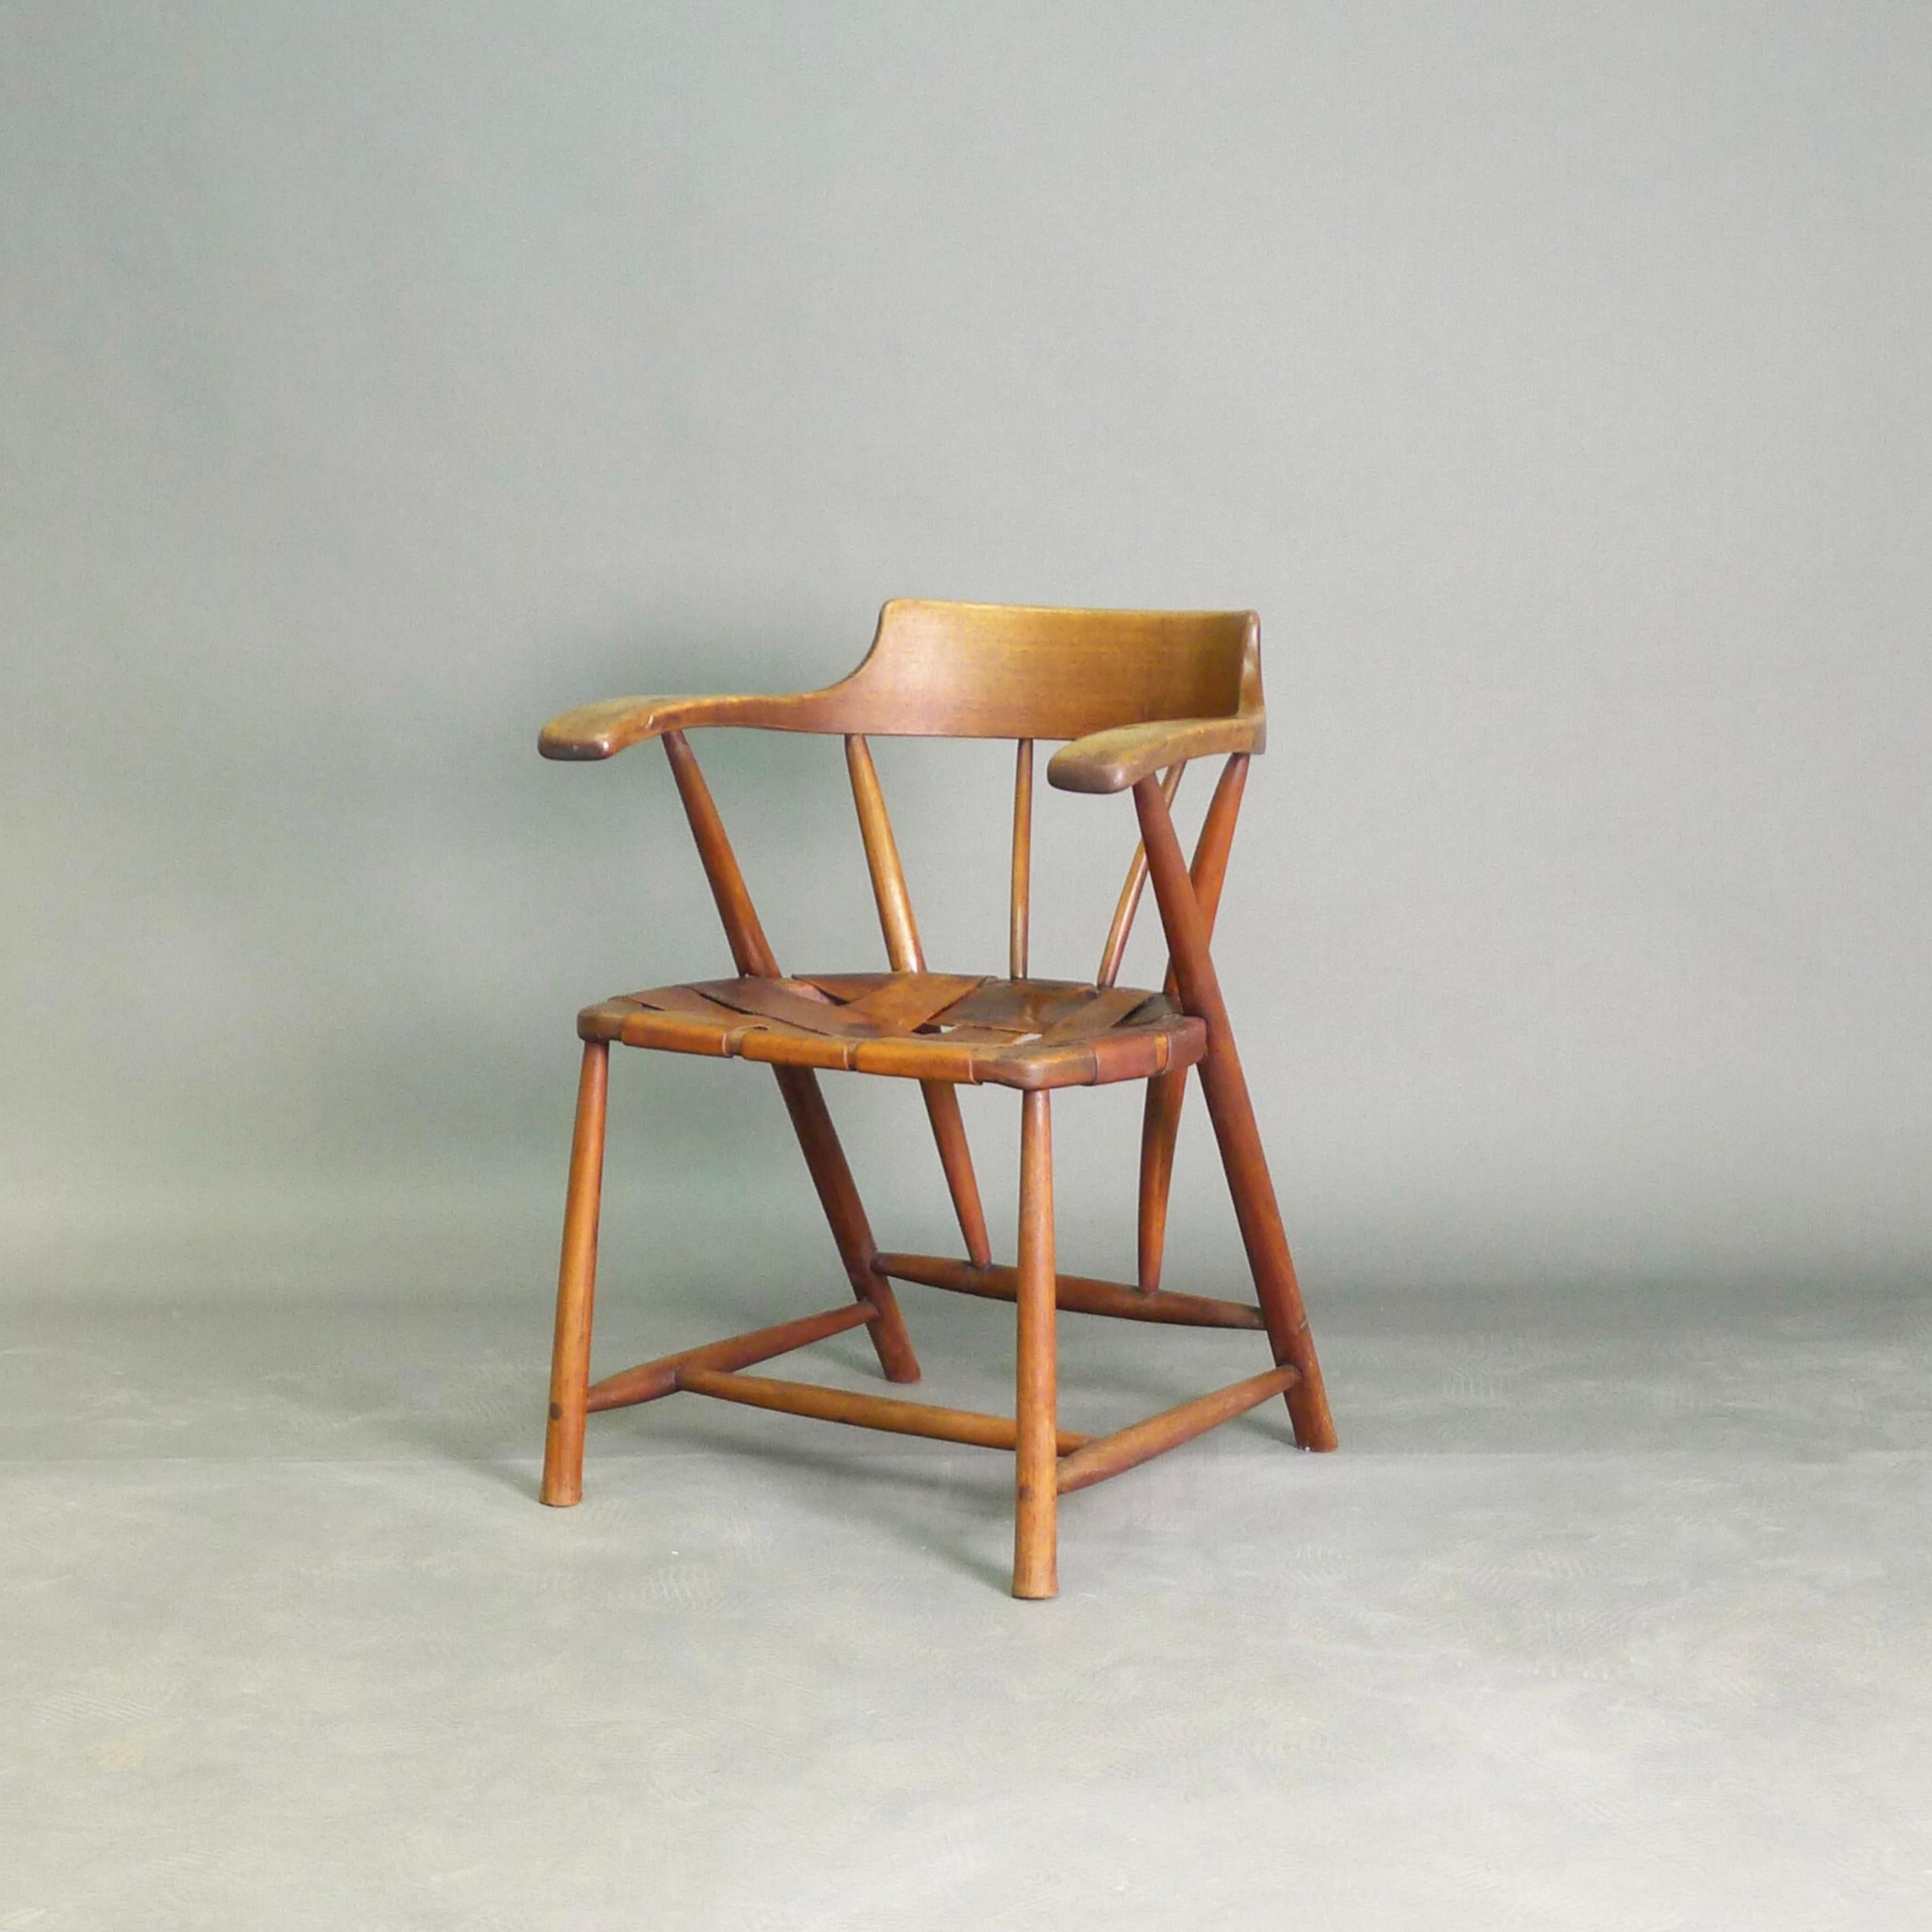 Rare chaise de capitaine originale du sculpteur et designer de meubles américain Wharton Esherick (1887-1970).

S'inspirant de la tradition Shaker de conception de meubles, Esherick a créé ce modèle emblématique dans ses studios de Paoli, en